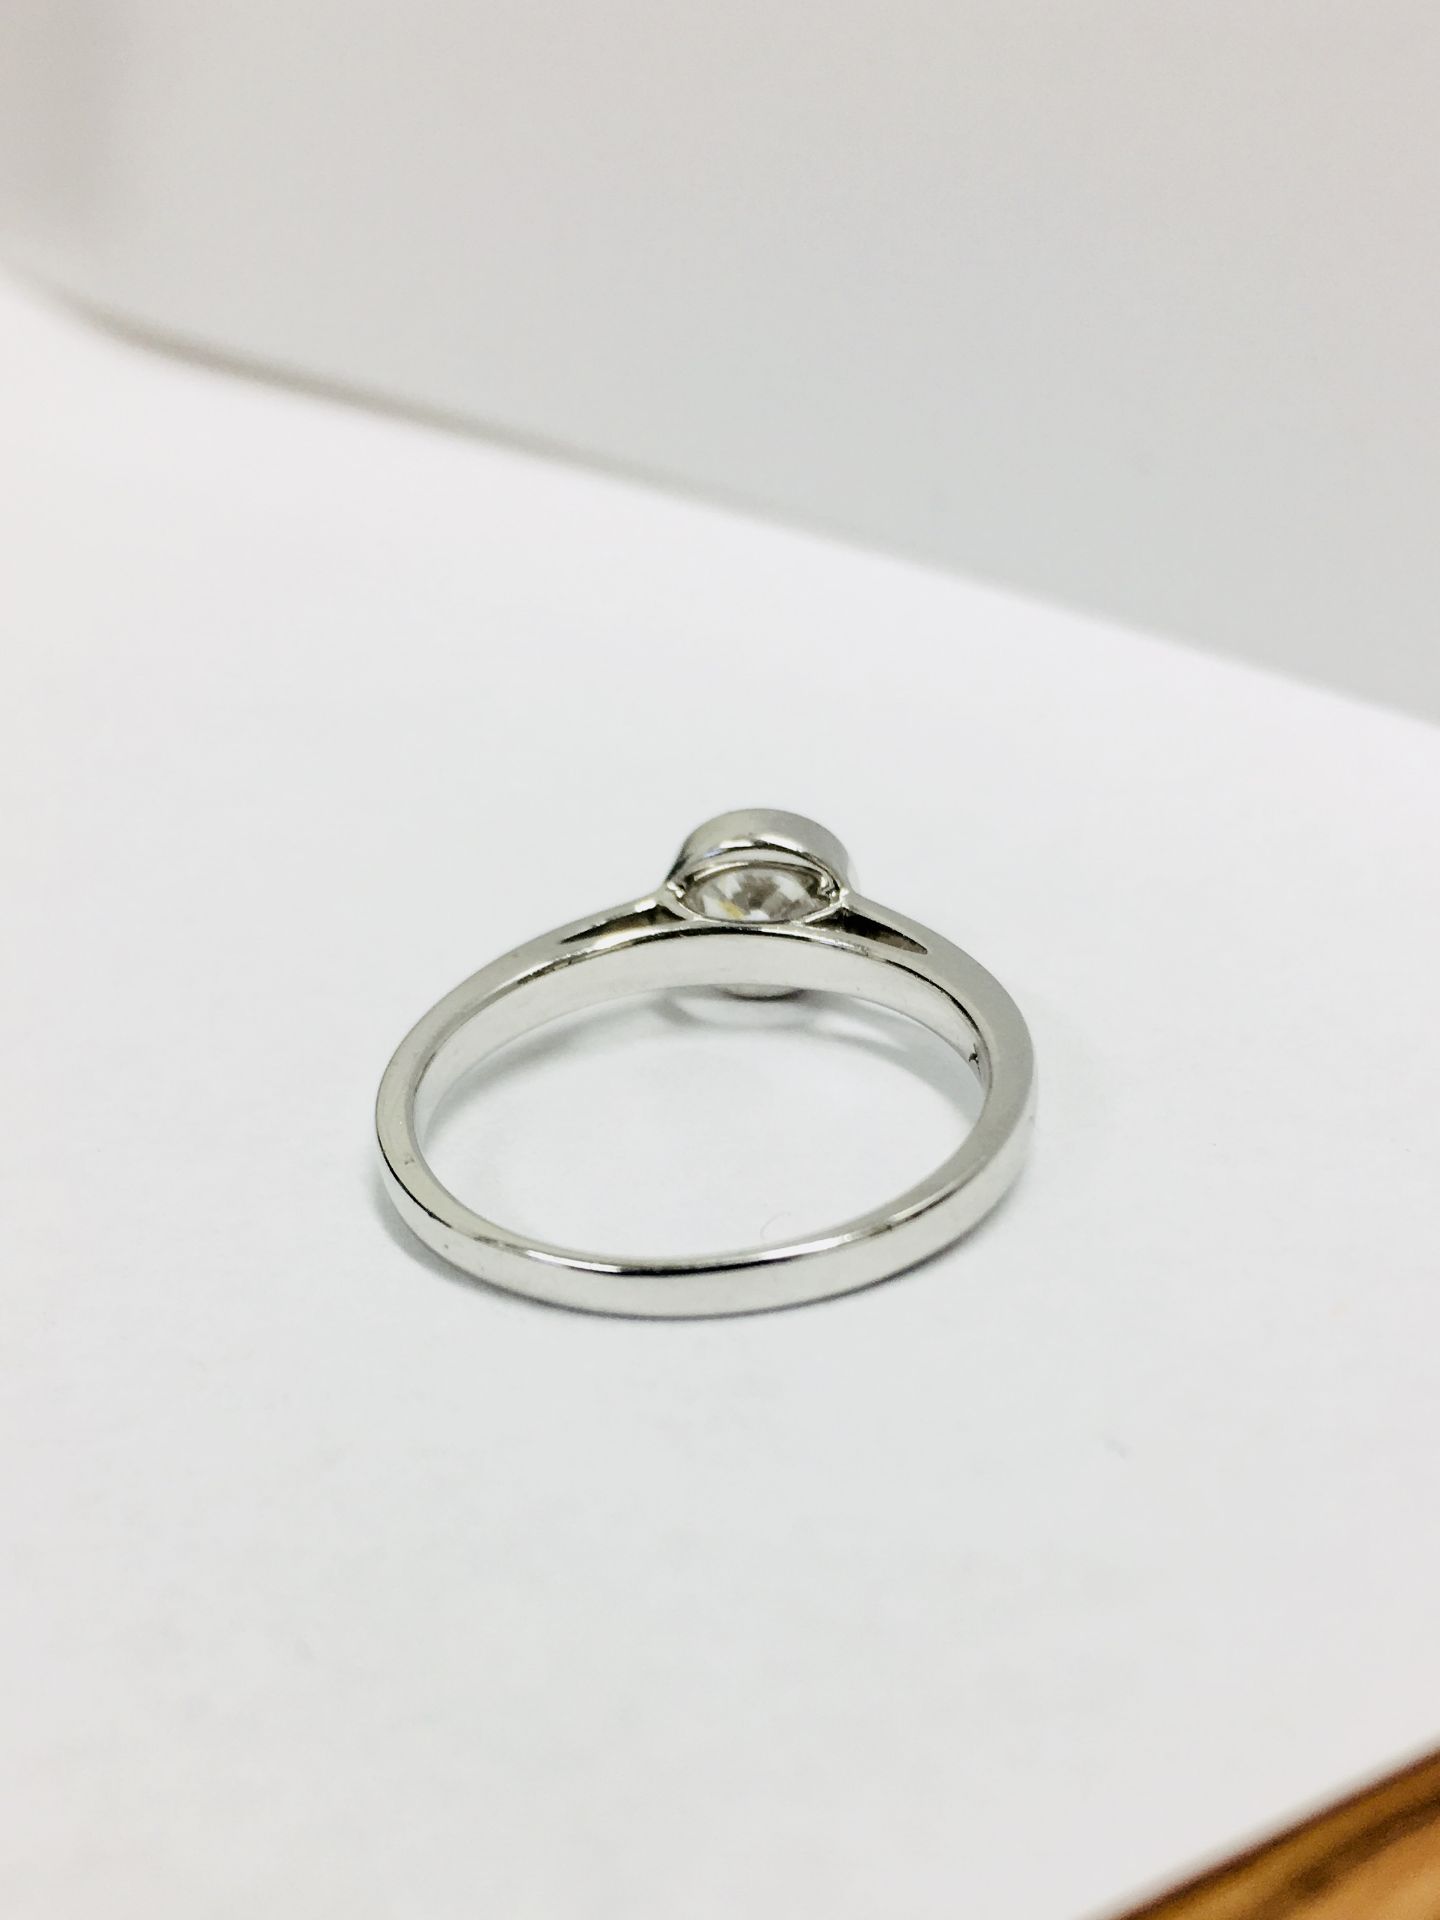 Platinum diamond solitaire ring,0.50ct brilliant cut diamond h colour vs clarity (clarity enhanced) - Bild 4 aus 4